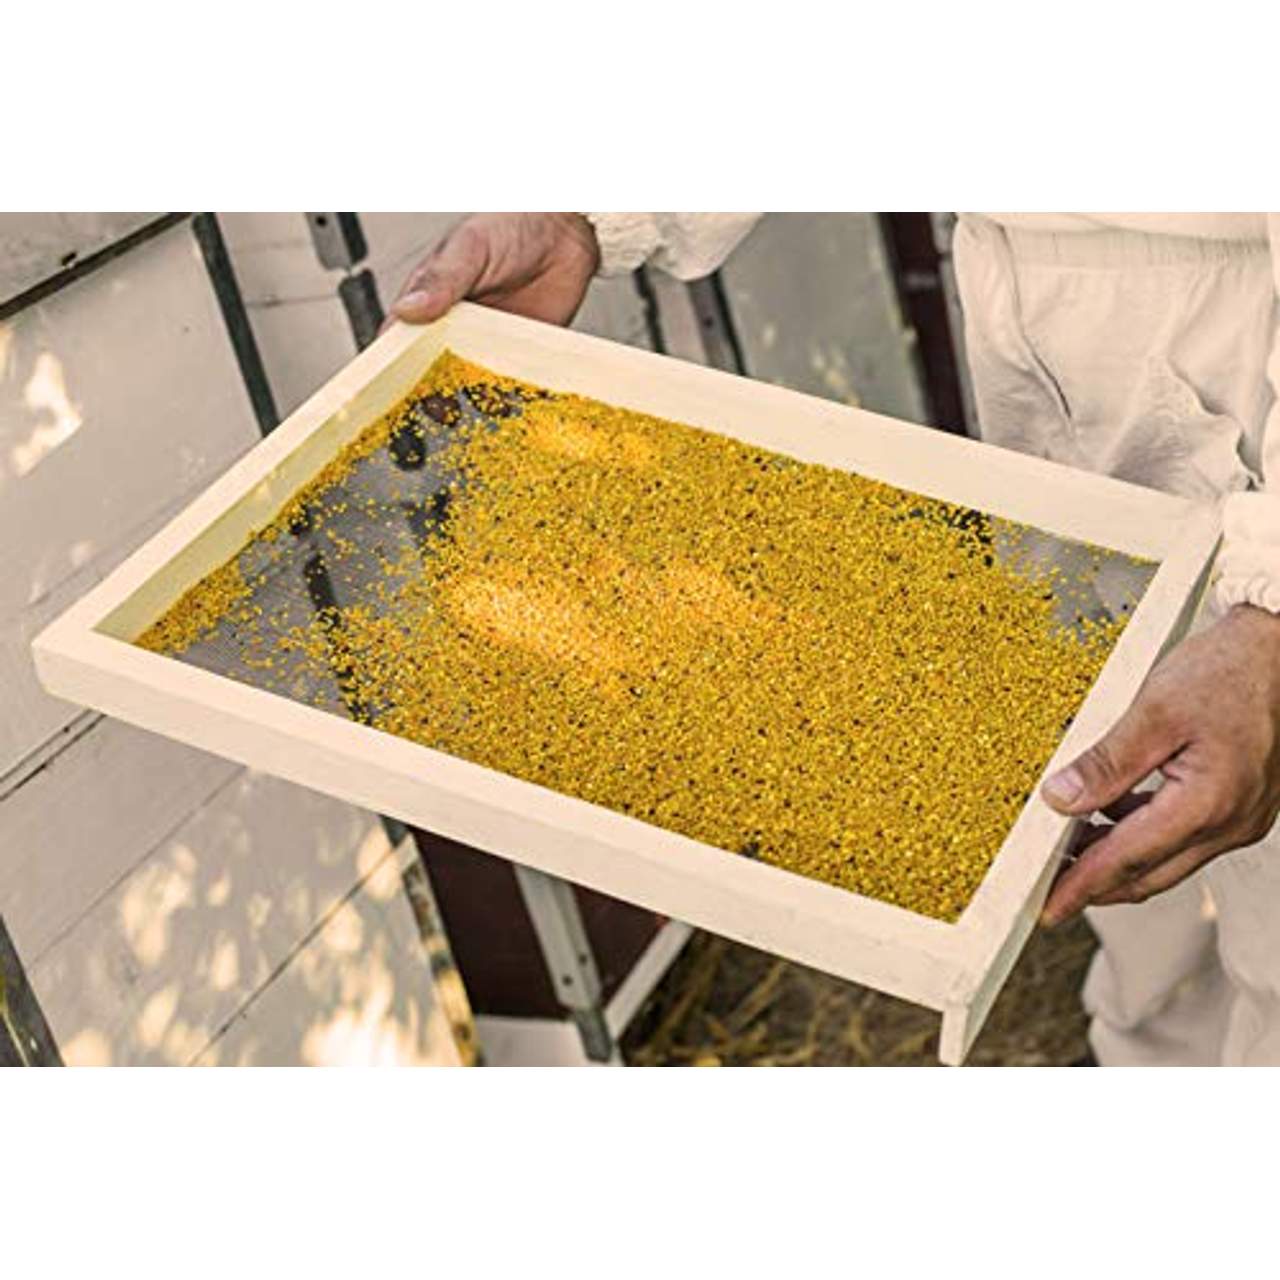 nectarvit BIO-Blütenpollen Bienenpollen von nectarvit I roh & unverarbeitet I 1000 g I min